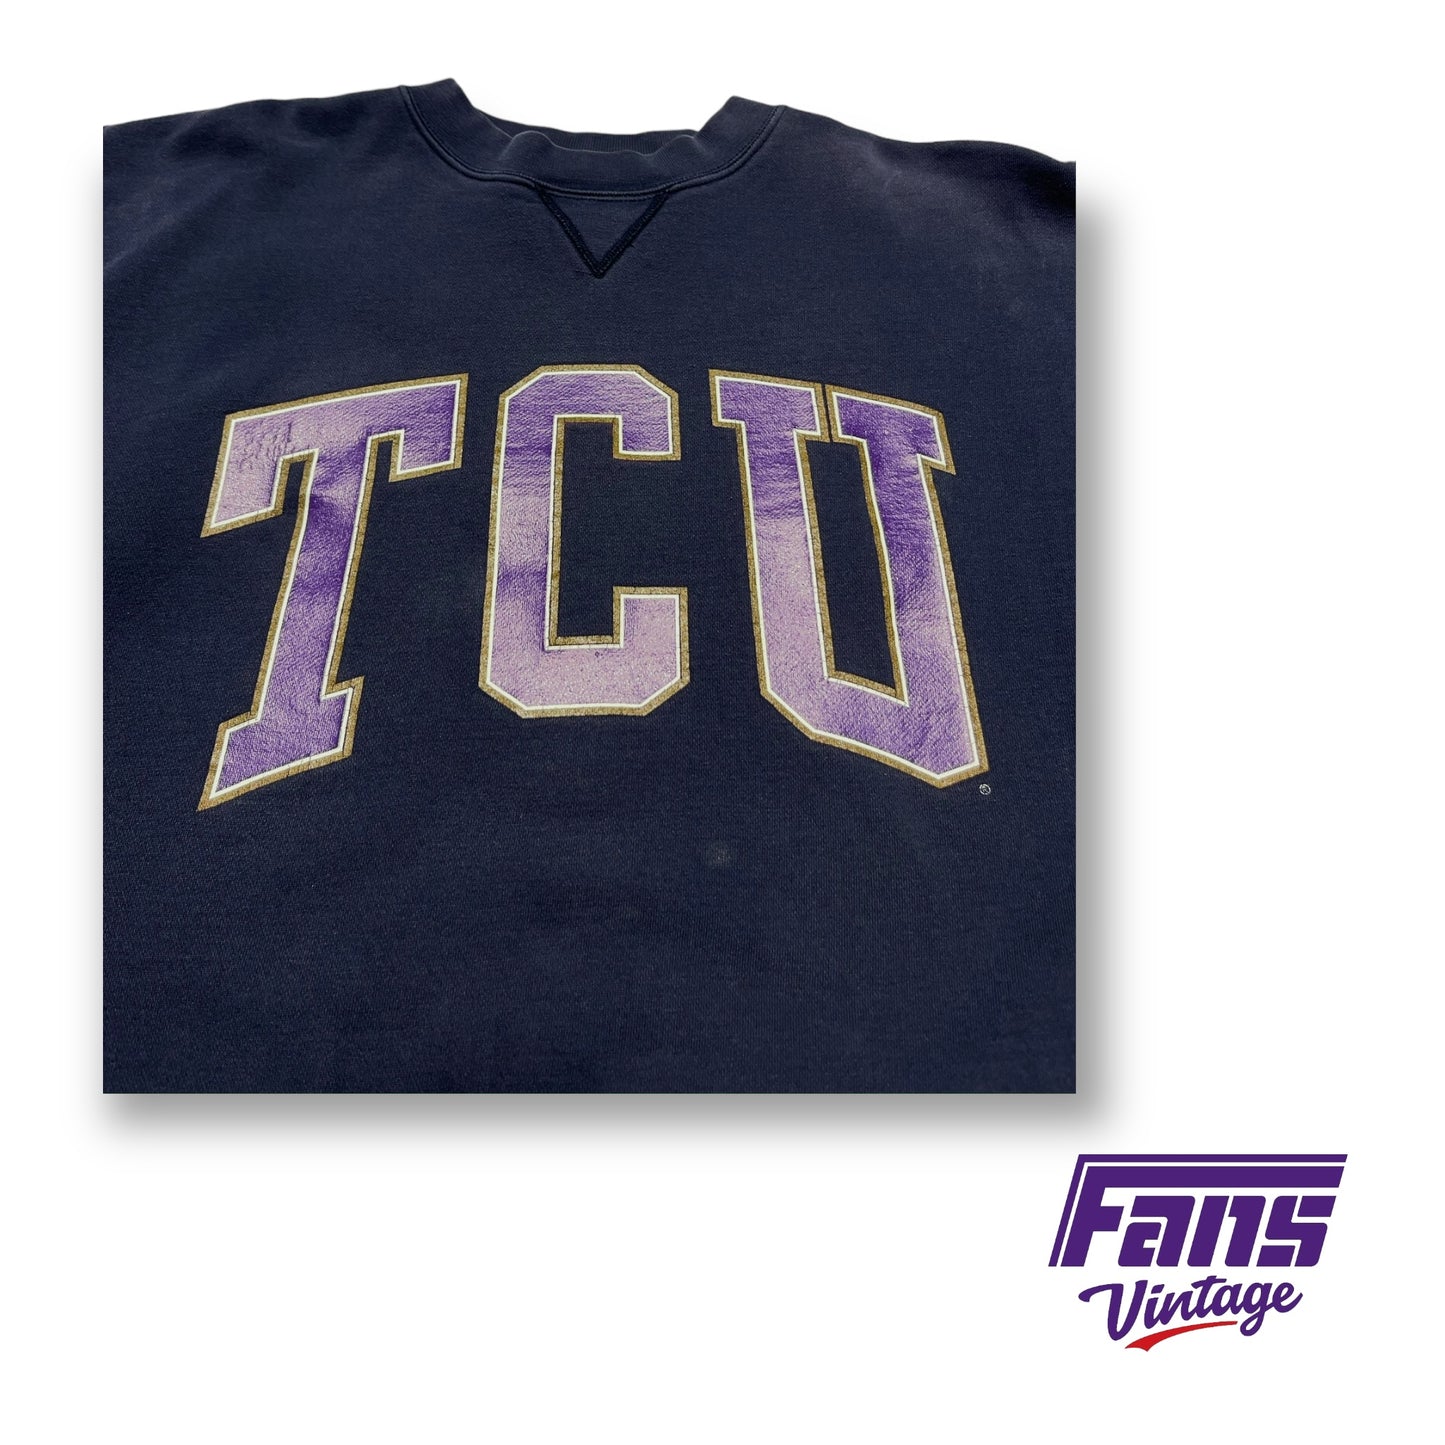 90s Vintage TCU Crewneck Sweater - Navy and purple color!